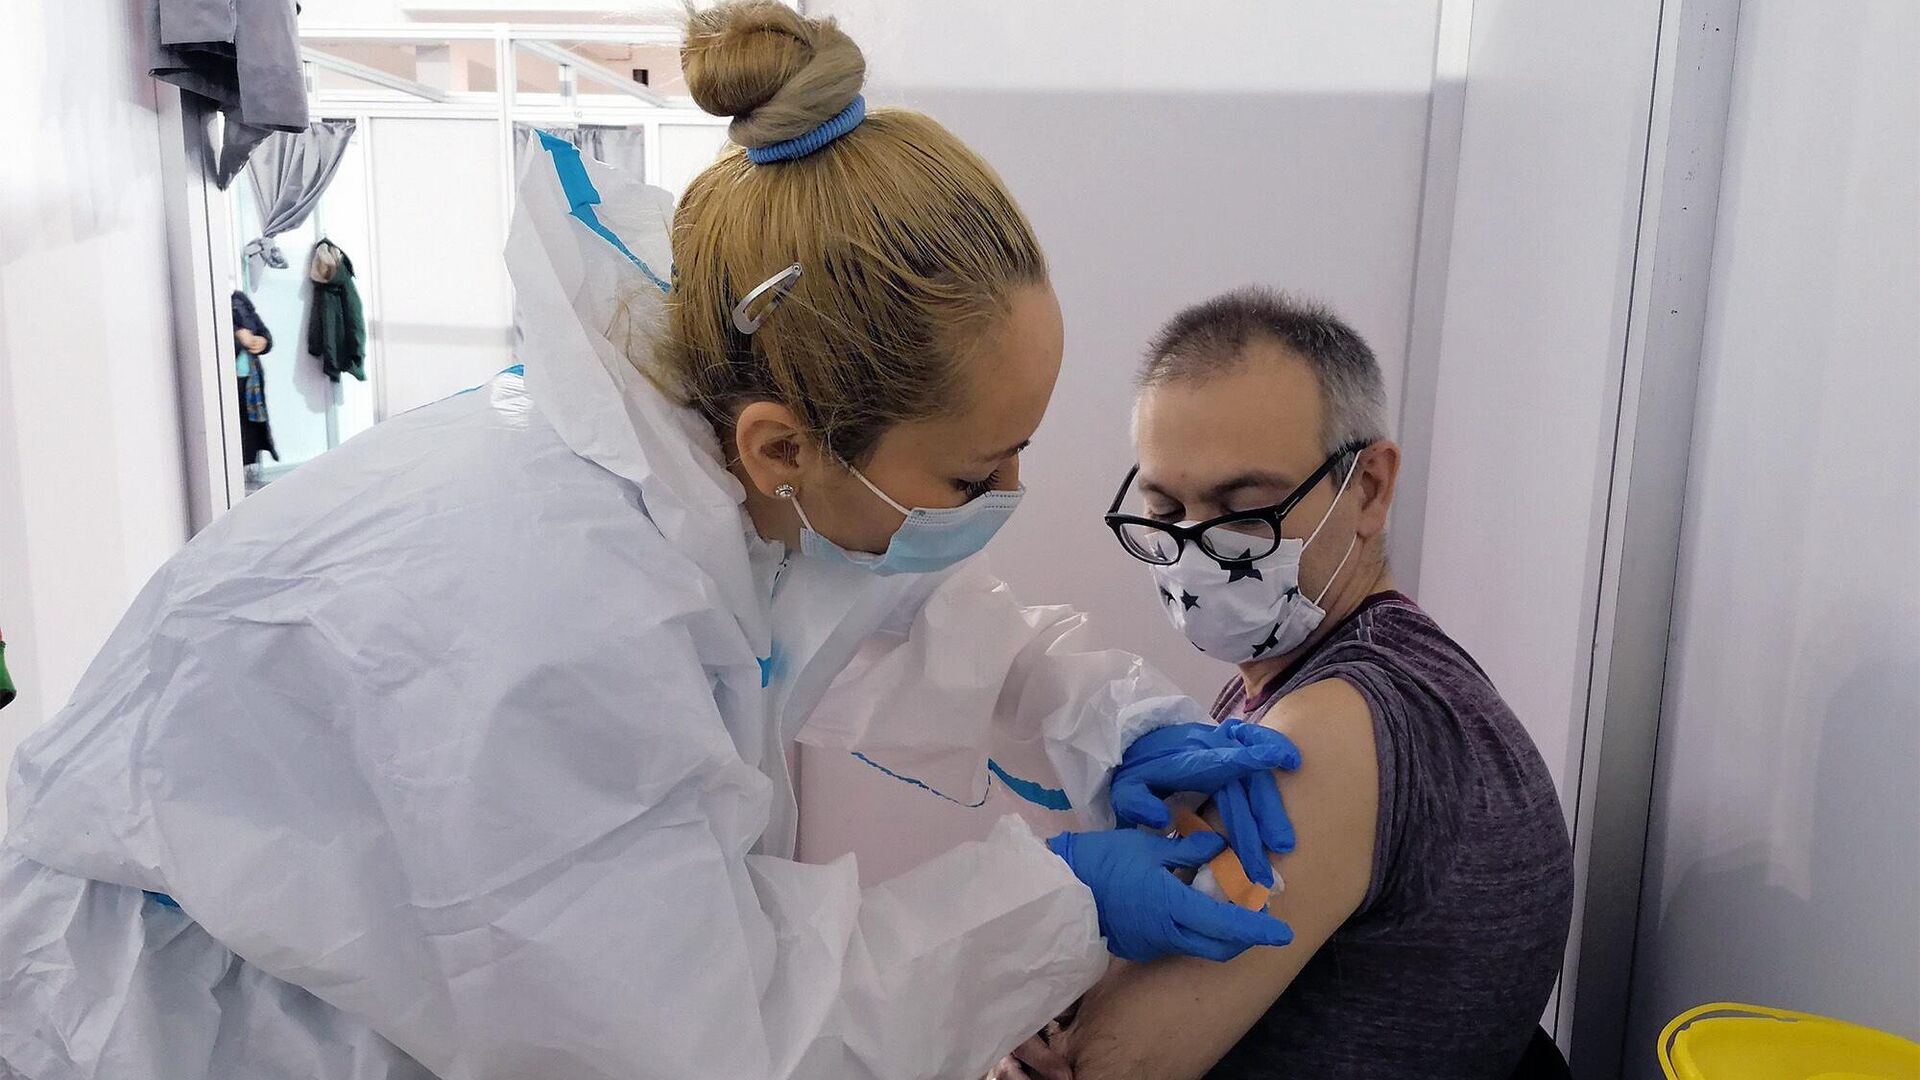 Мужчине делают прививку российской вакциной против COVID-19 Спутник V (Гам-КОВИД-Вак) в Белграде - РИА Новости, 1920, 10.02.2021